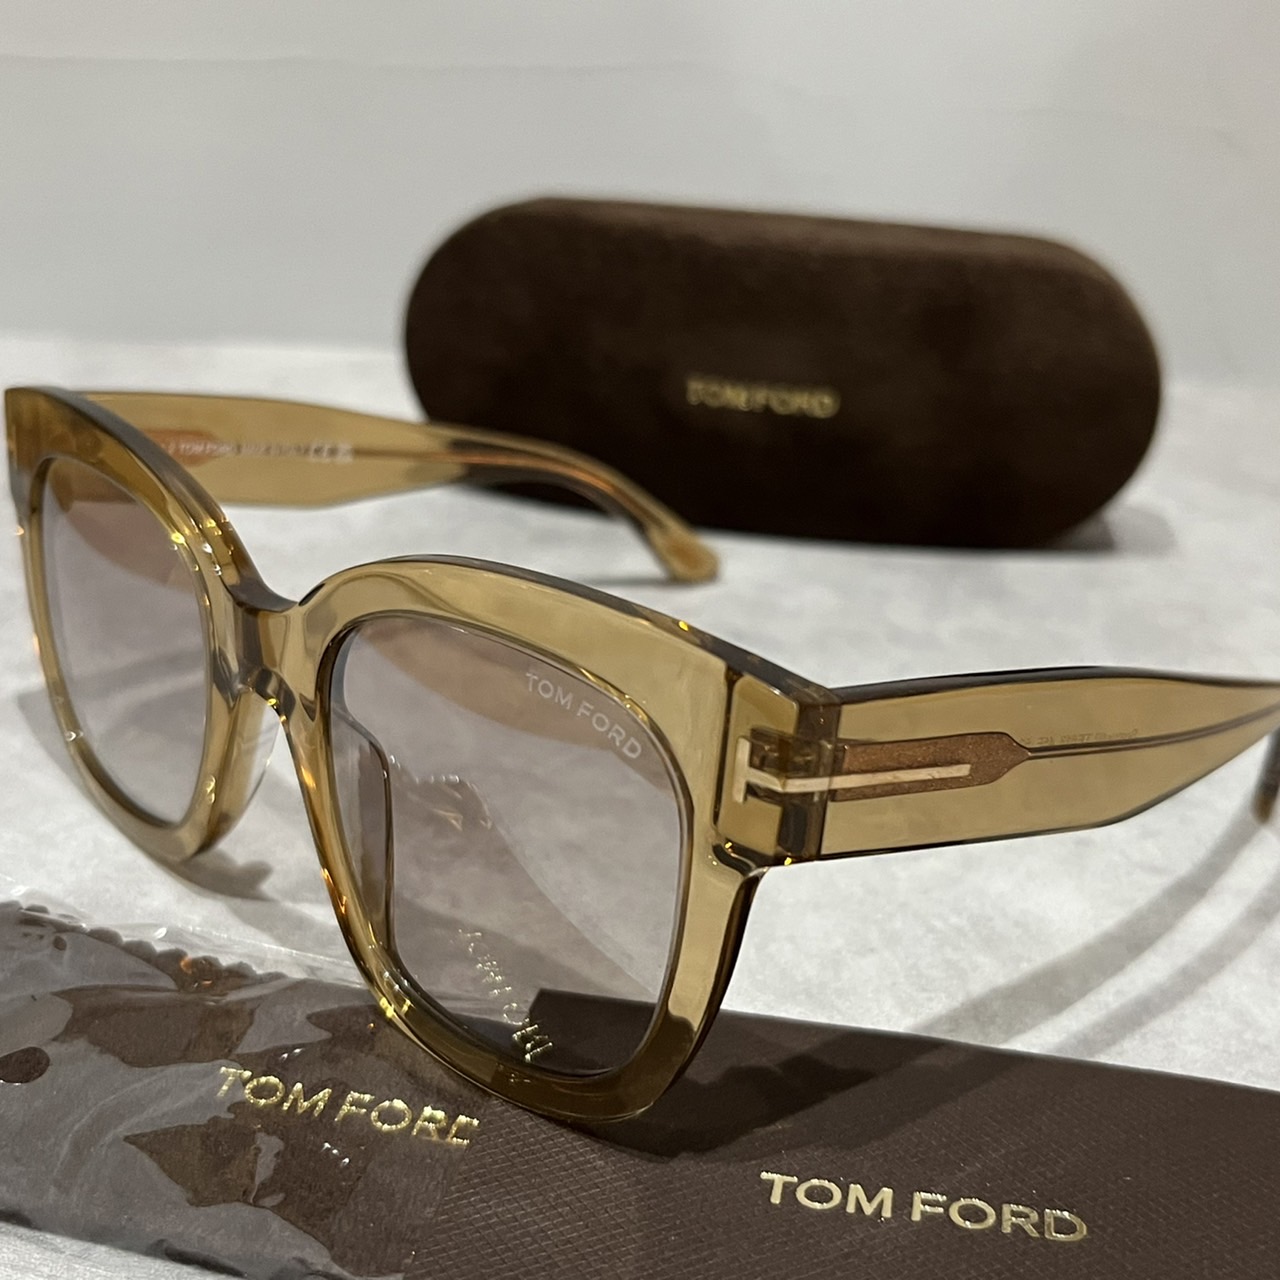 TOMFORD トムフォード TF613 眼鏡 FT613 並行輸入品 ウェリントン